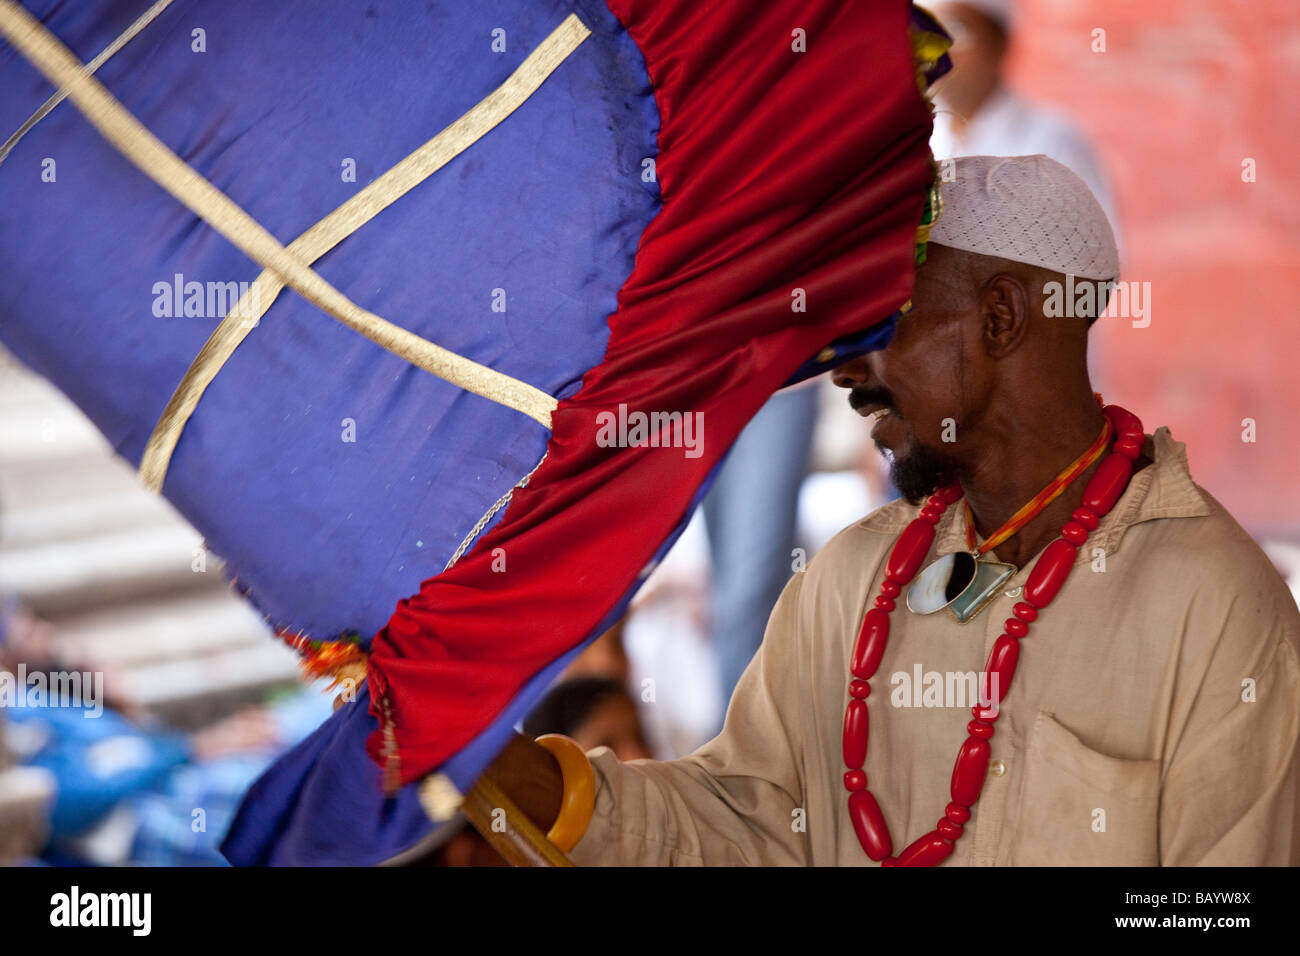 Porteur de ventilateur à Nizamuddin culte à Delhi Inde Banque D'Images